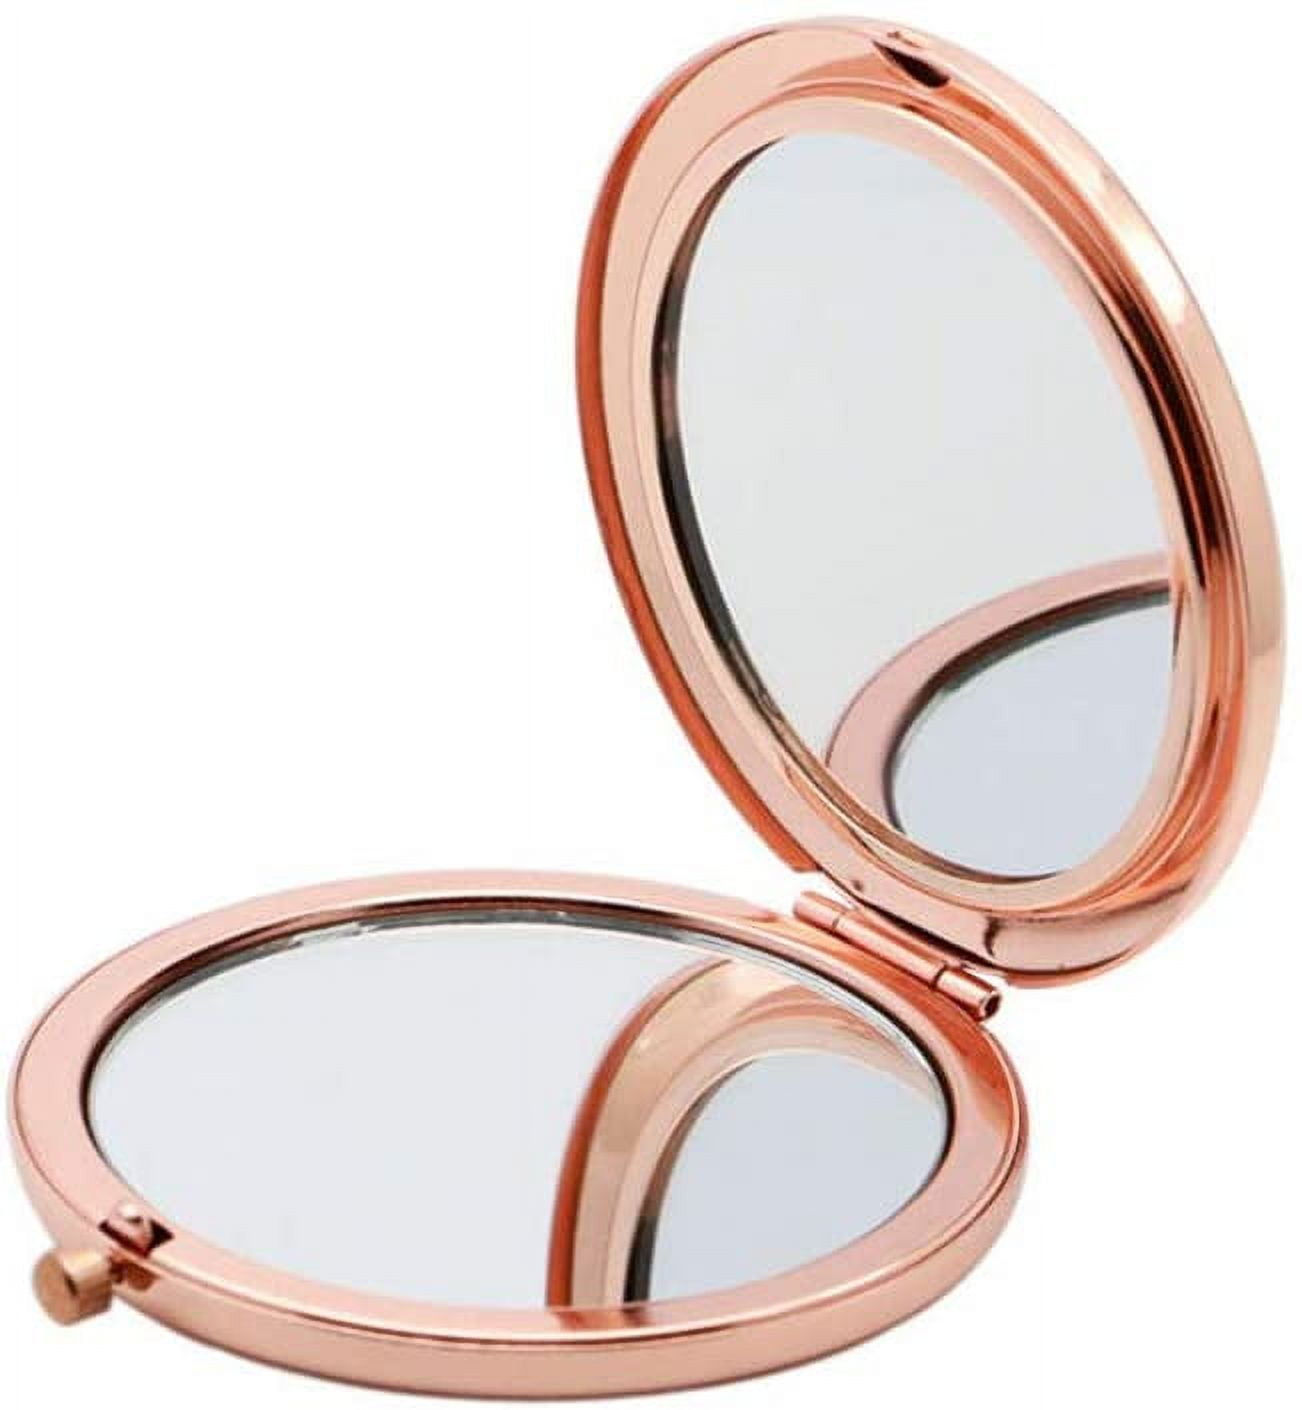 mini mirrors Un espejo en el que se pueden poner joyas foldable mirror